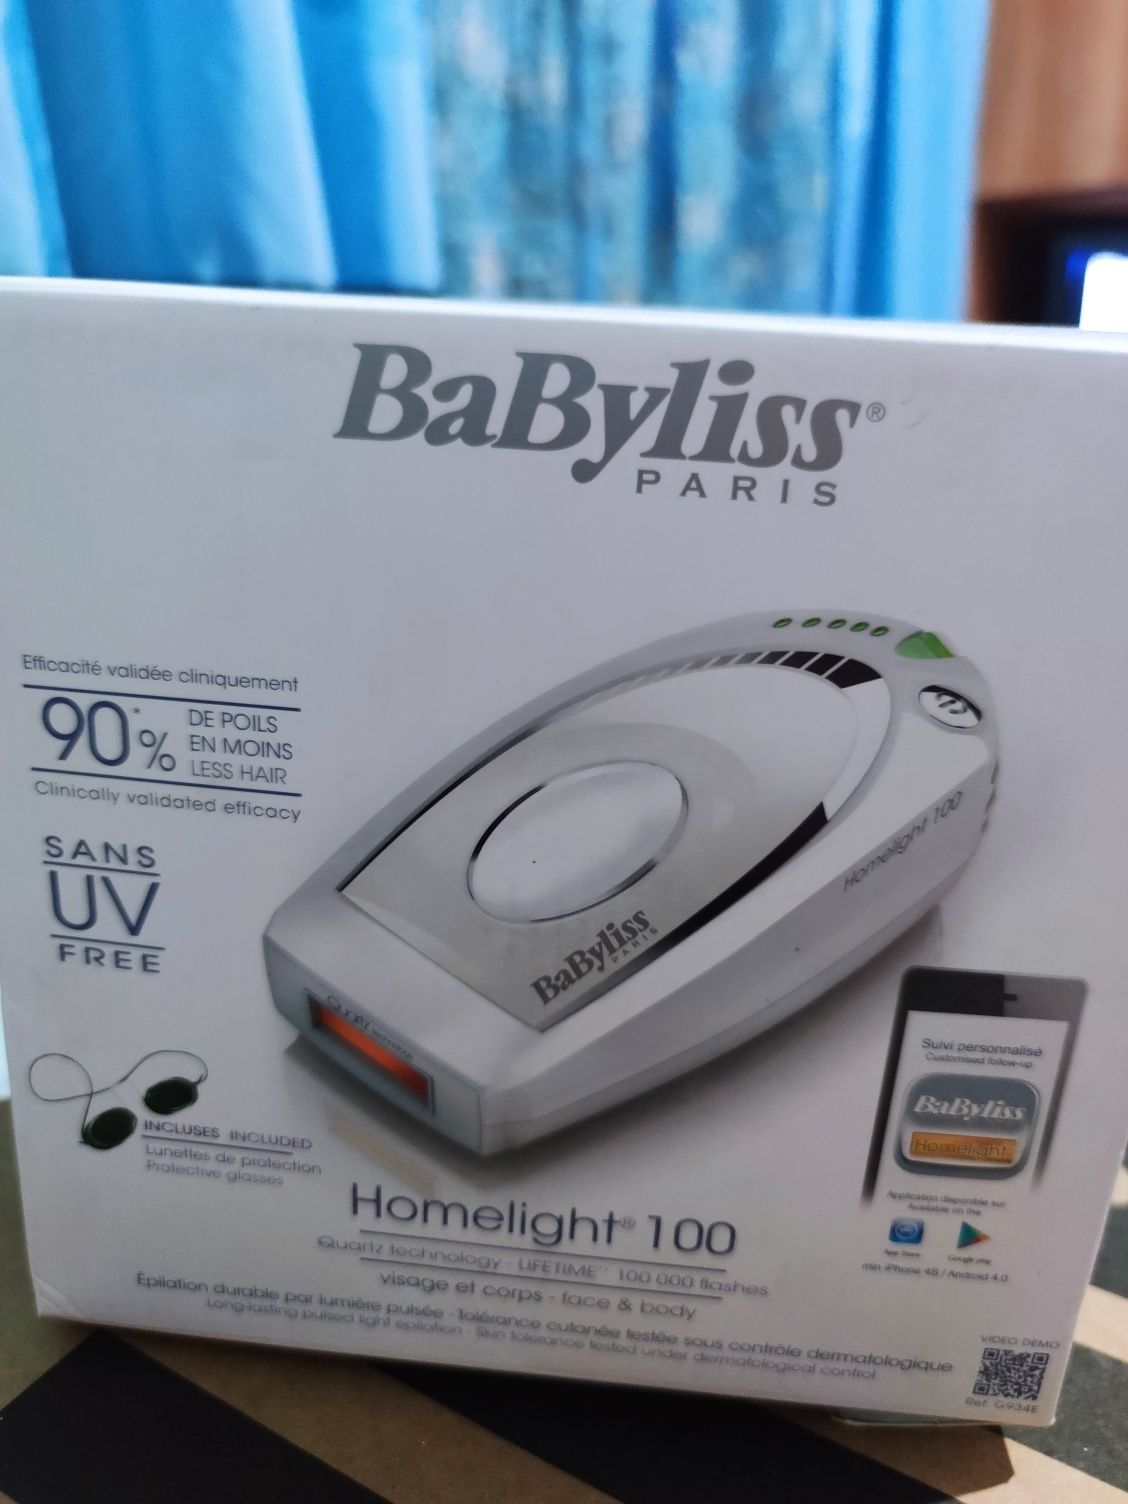 Epilator Babyliss Homelight 100